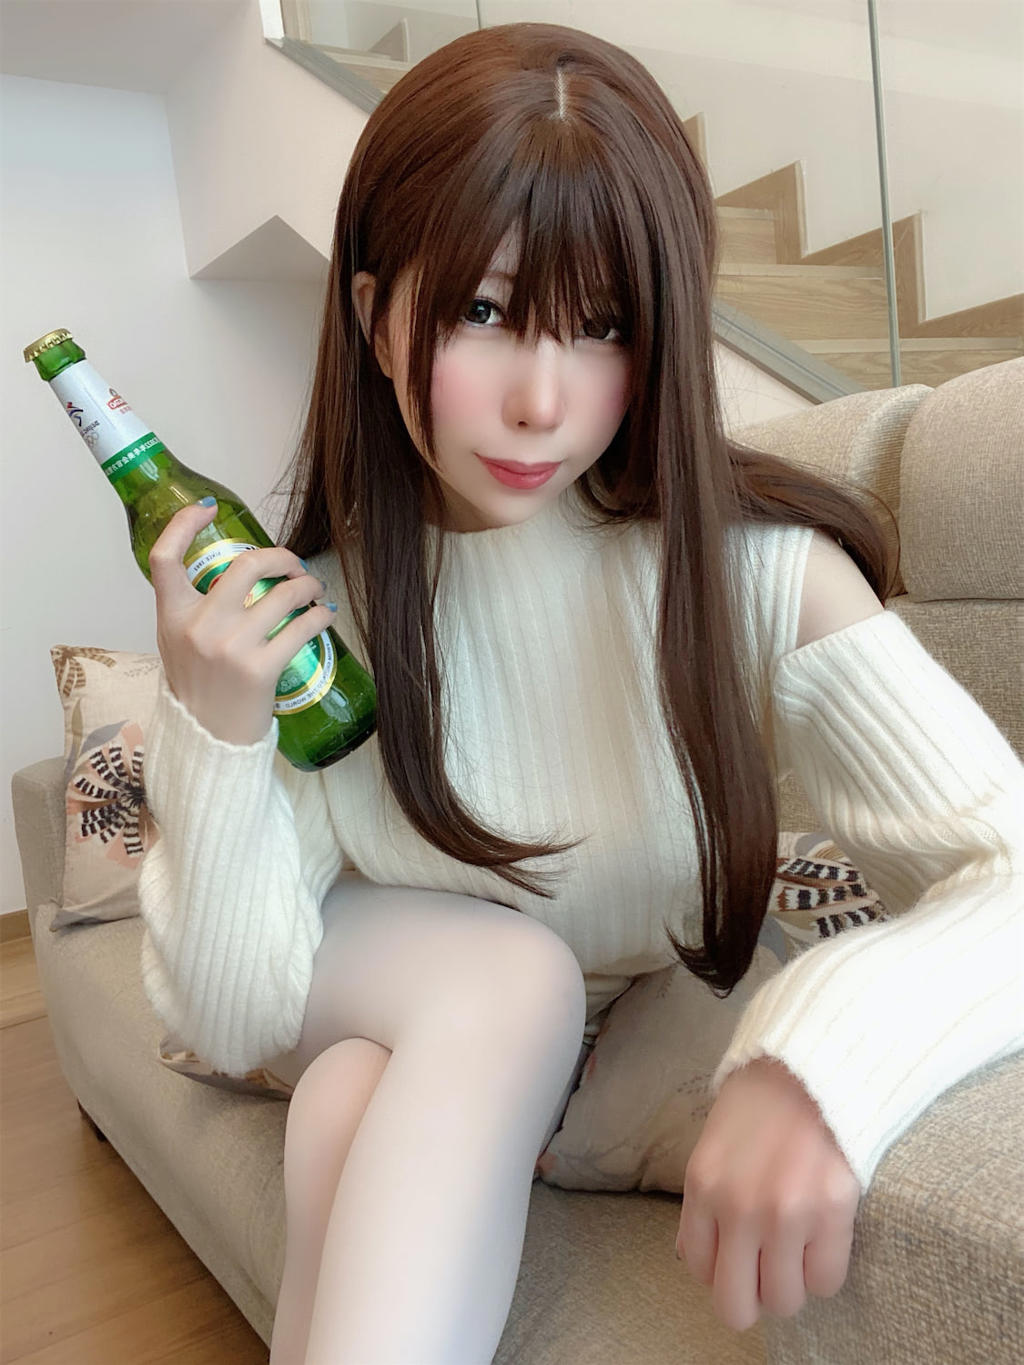 鹿野希爱喝啤酒毛衣女友100p